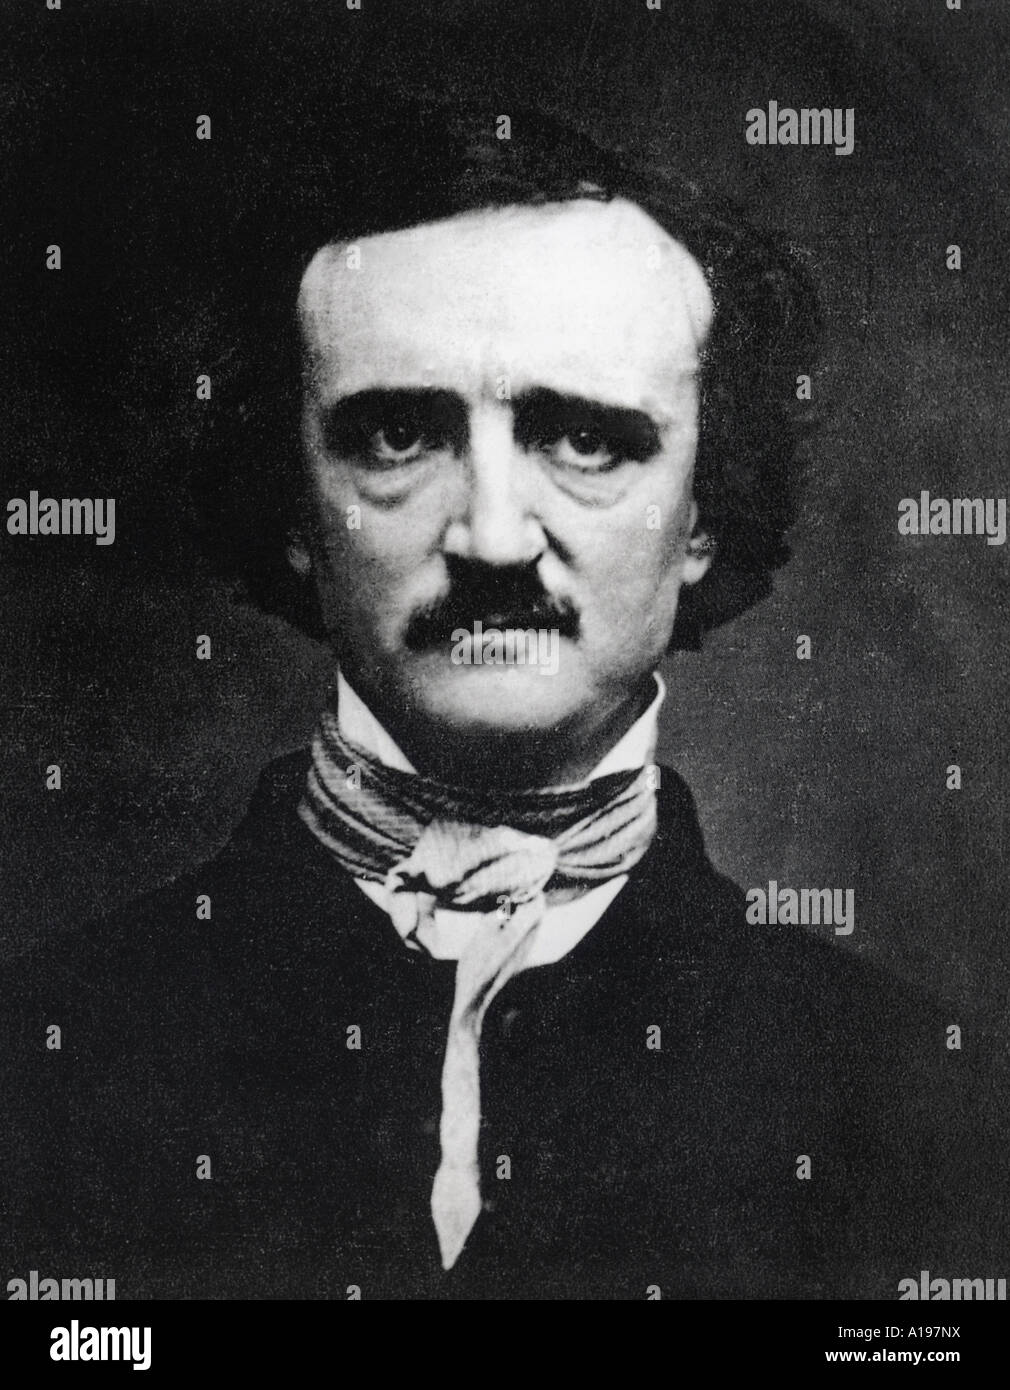 EDGAR Allan Poe escritor norteamericano de 1809 a 1849 Foto de stock